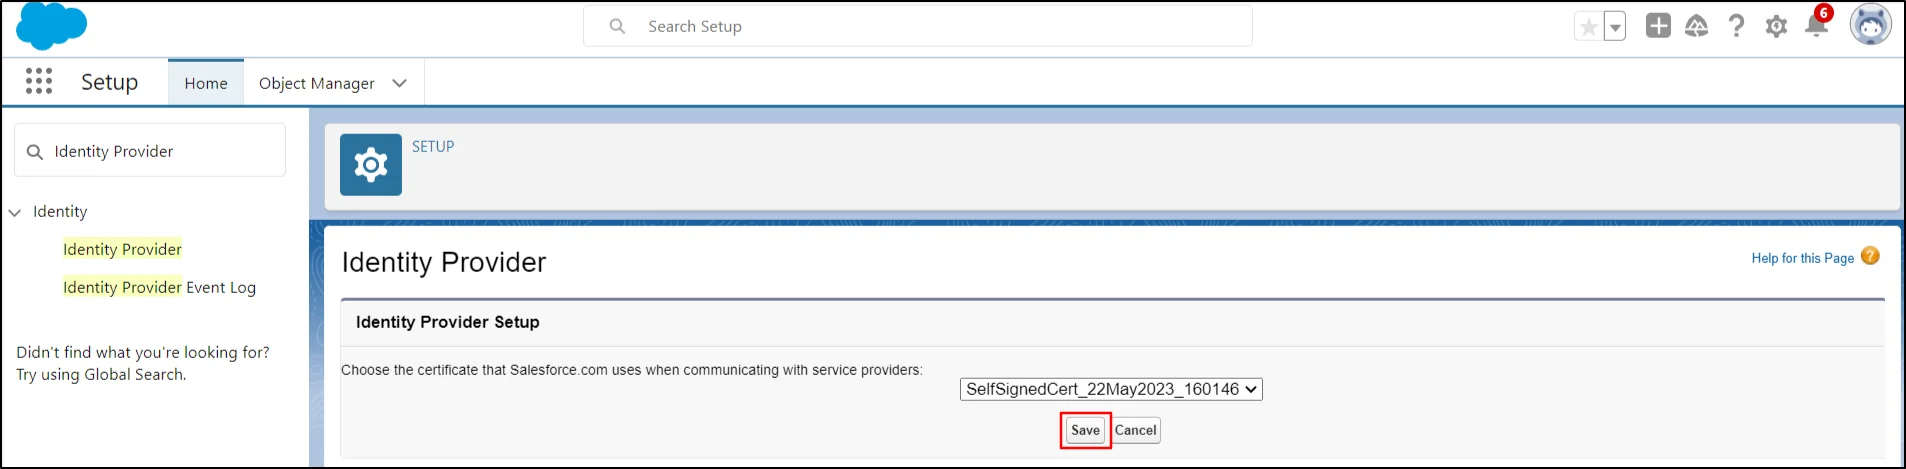 Menú Administrar: Inicio de sesión único SAML de Salesforce (SSO): haga clic en el botón Guardar